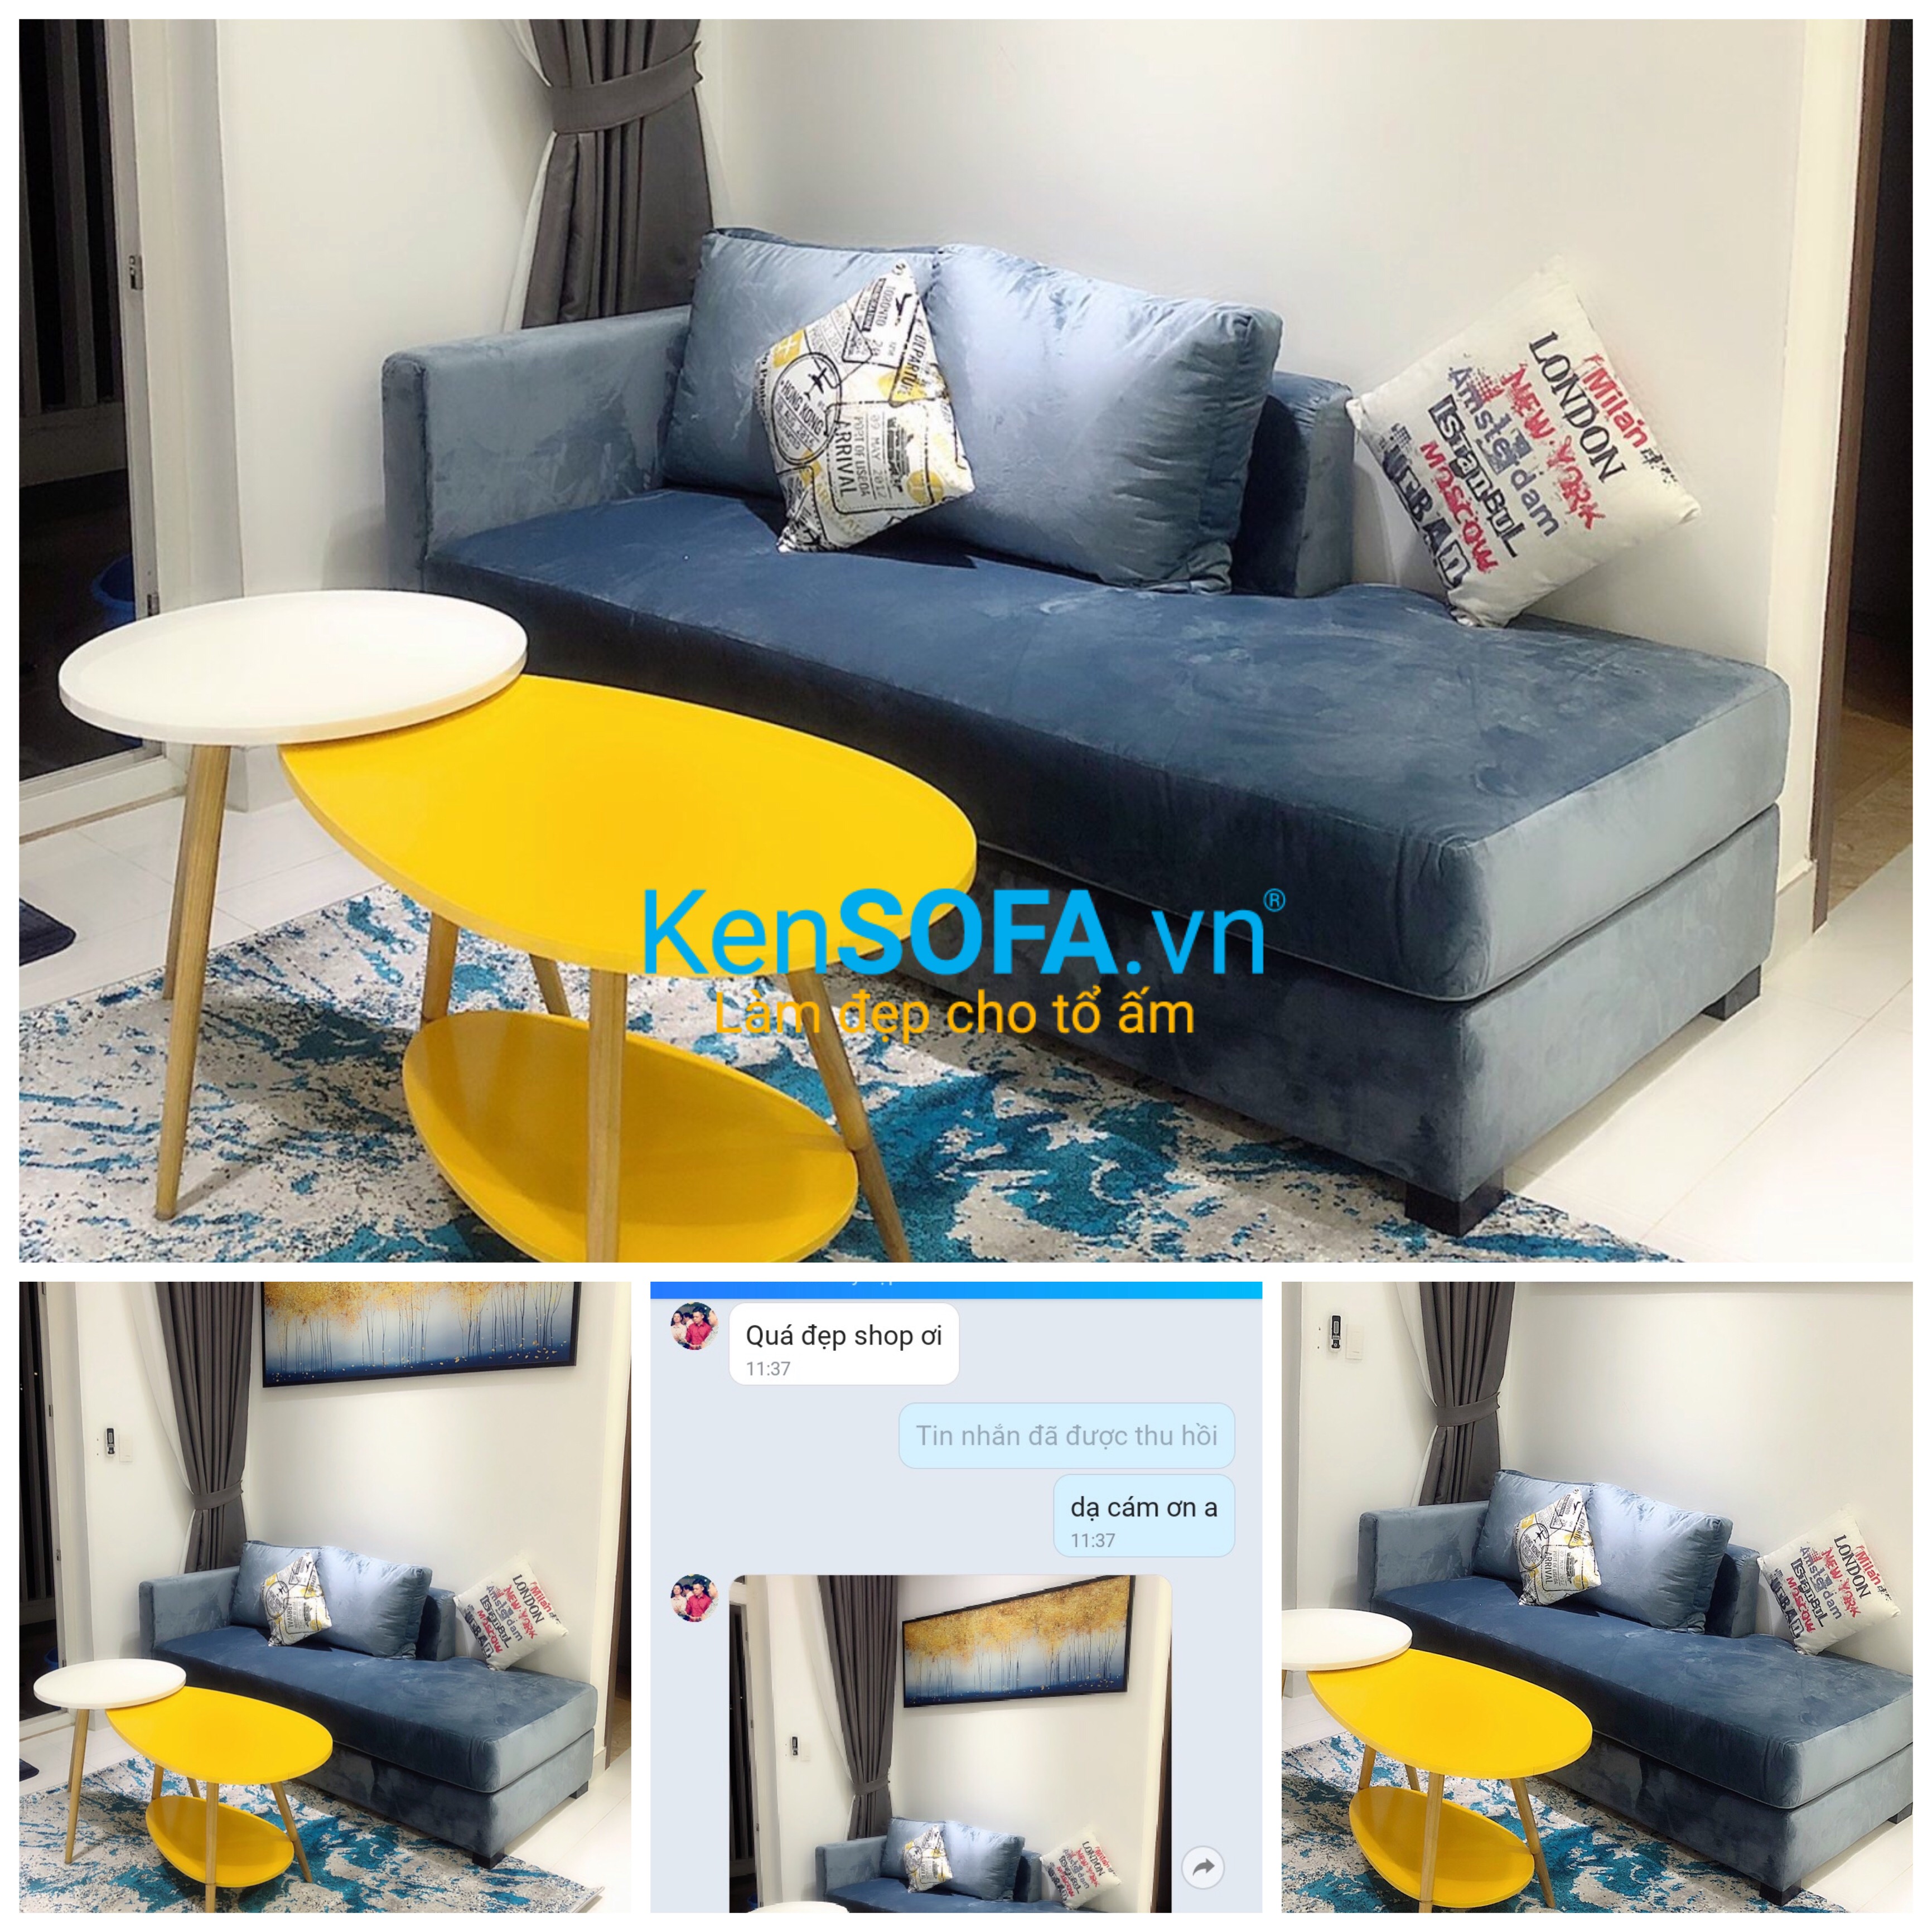 KenSOFA – cửa hàng ghế sofa giường giá rẻ ở TPHCM - Tư vấn ...